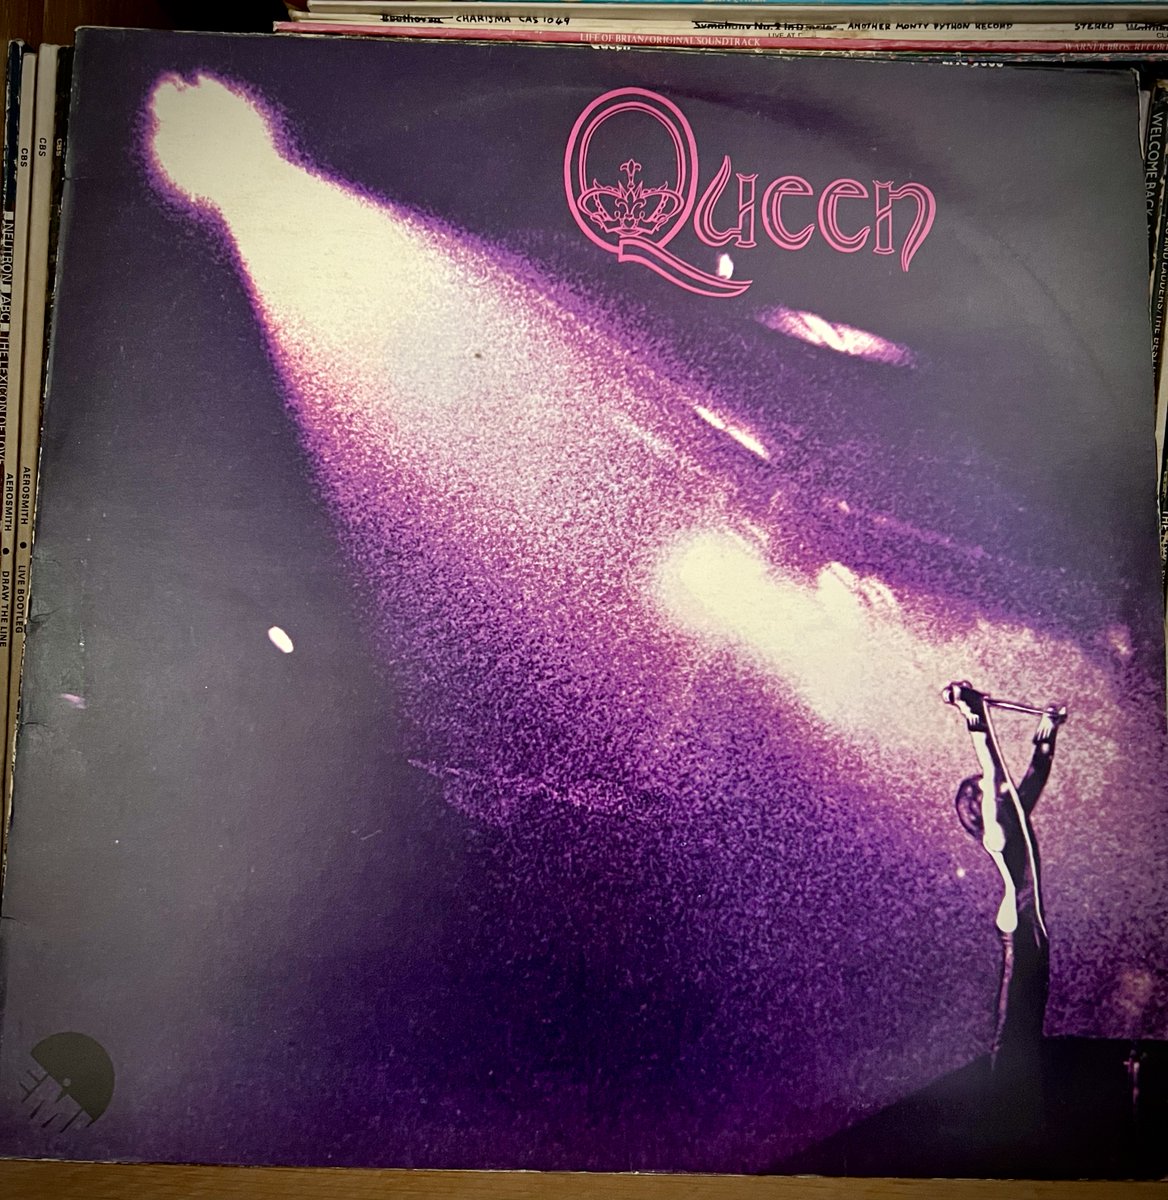 #AlphabetChallenge #WeekQ - 'Q' is for Queen 

#MusicMonday